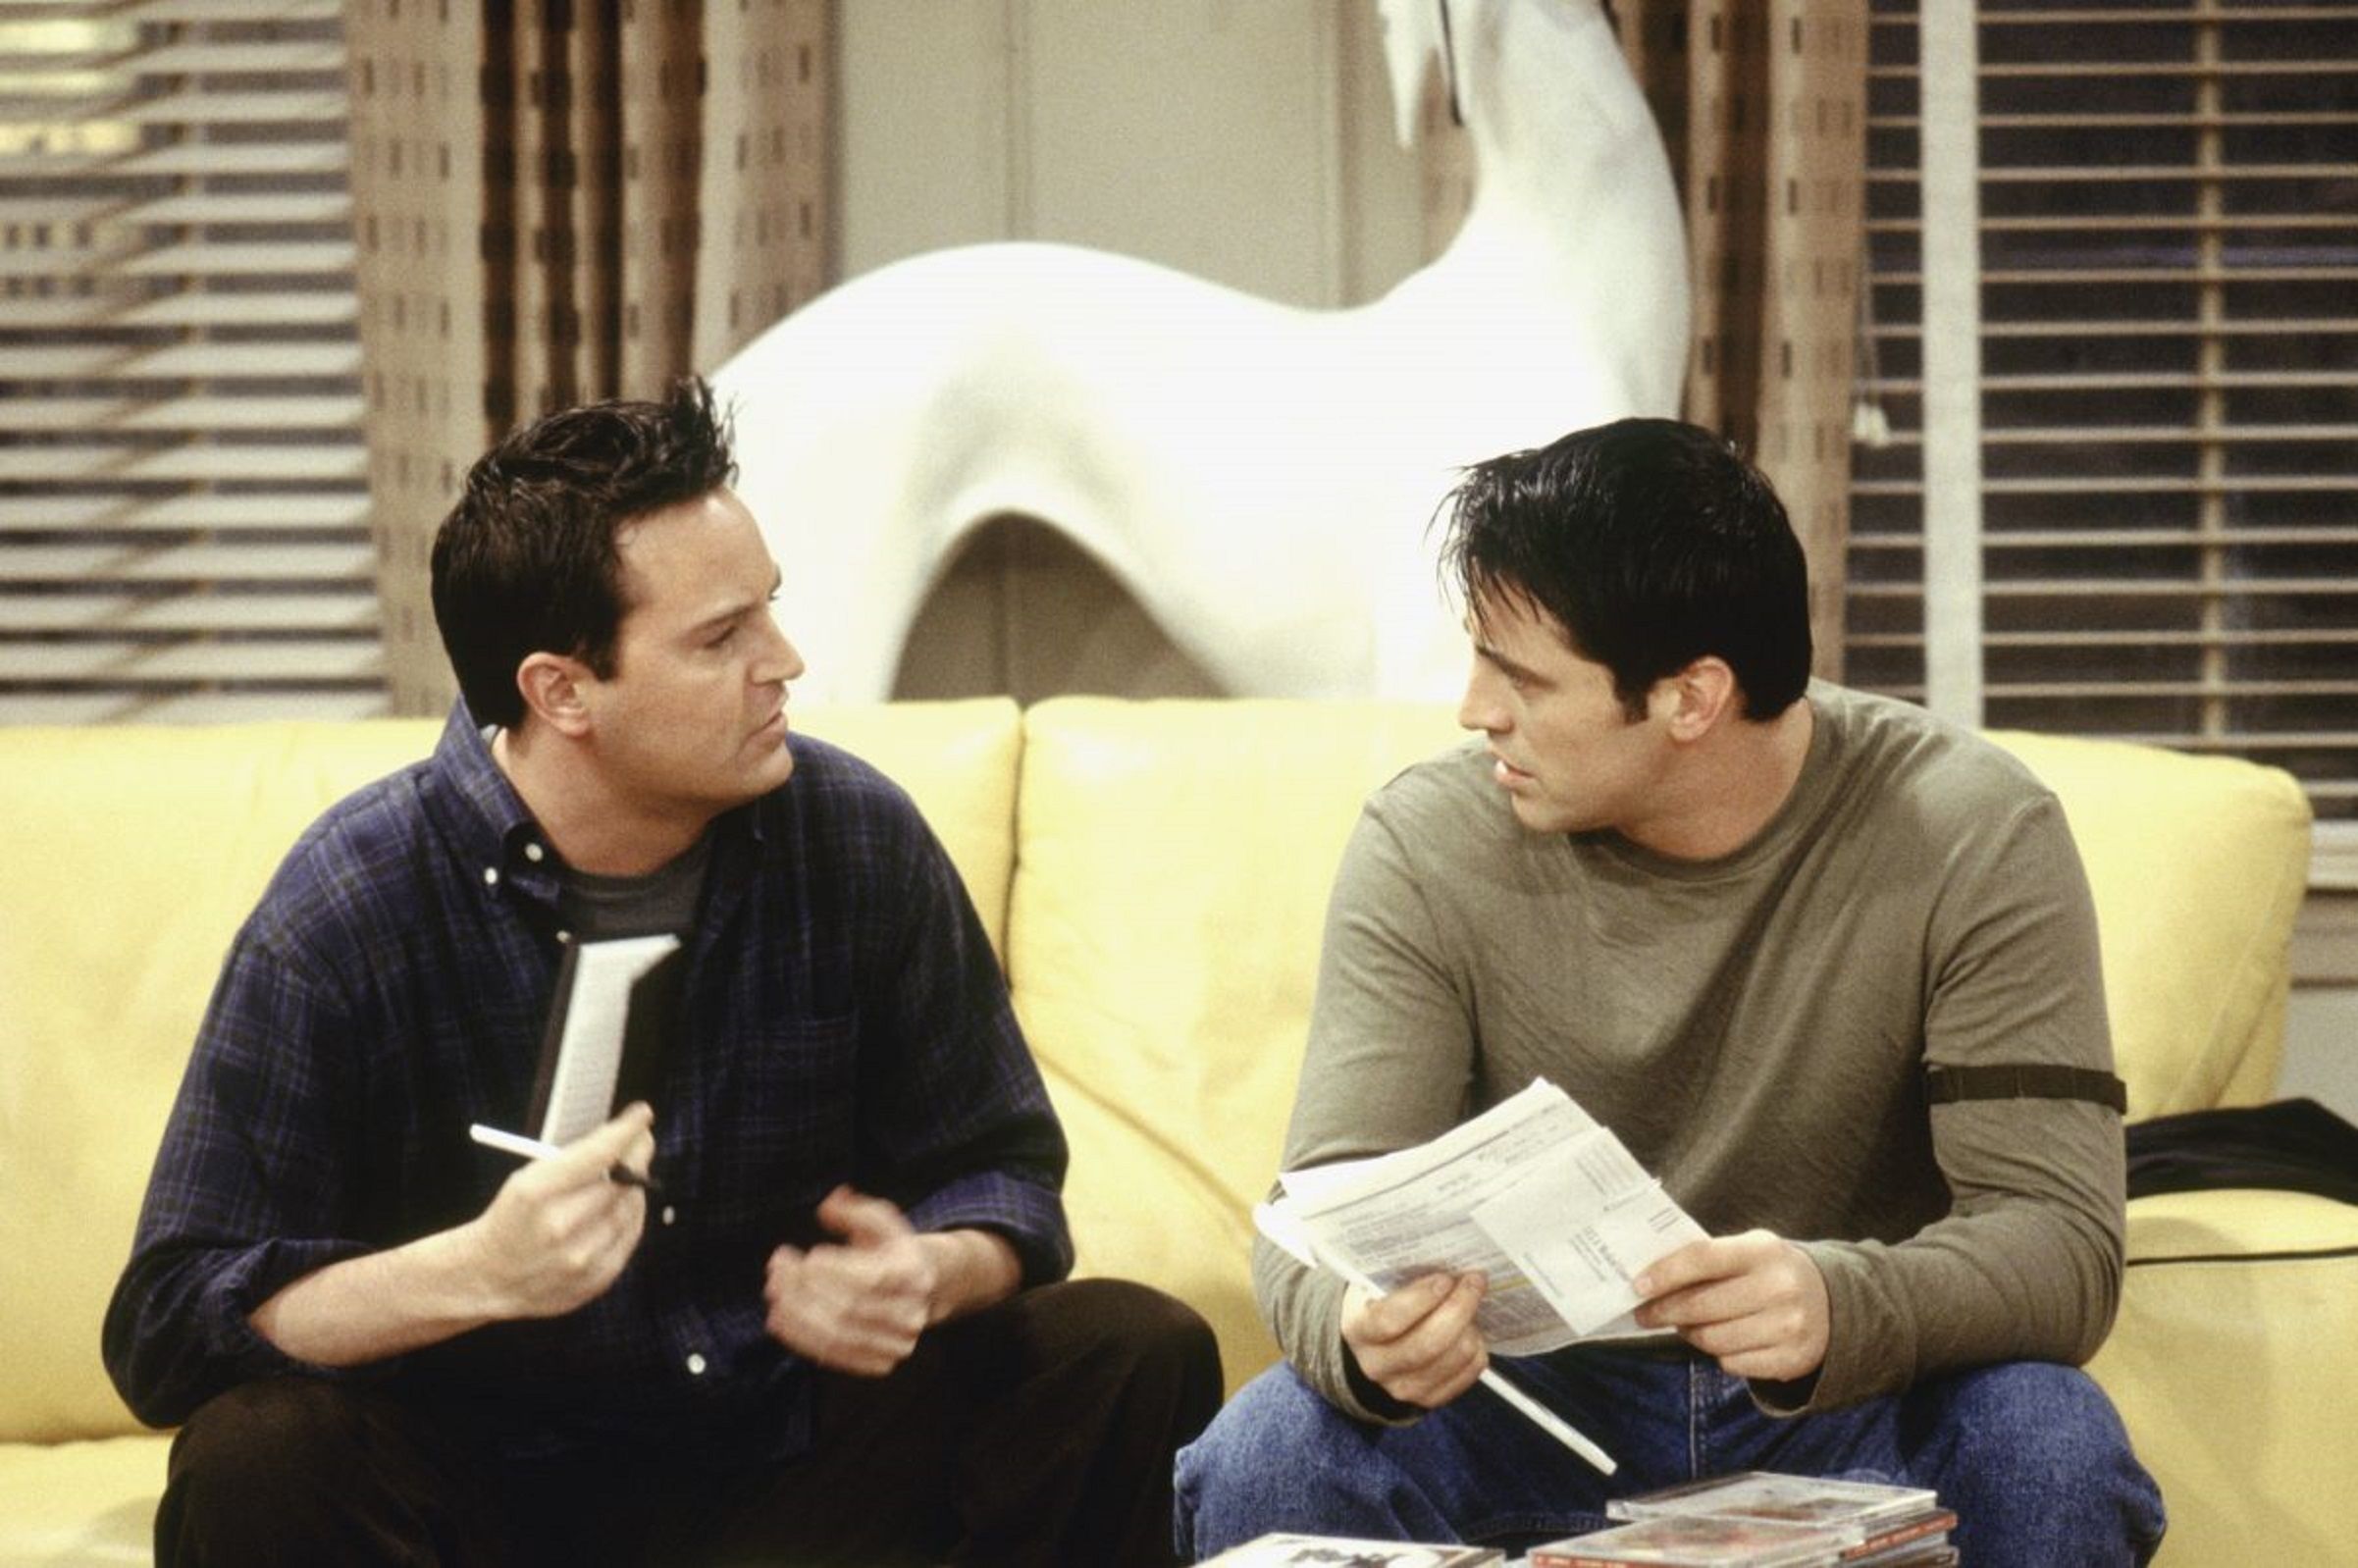 El petó de Chandler i Joey també va anar vetat / Arxiu|Arxivament